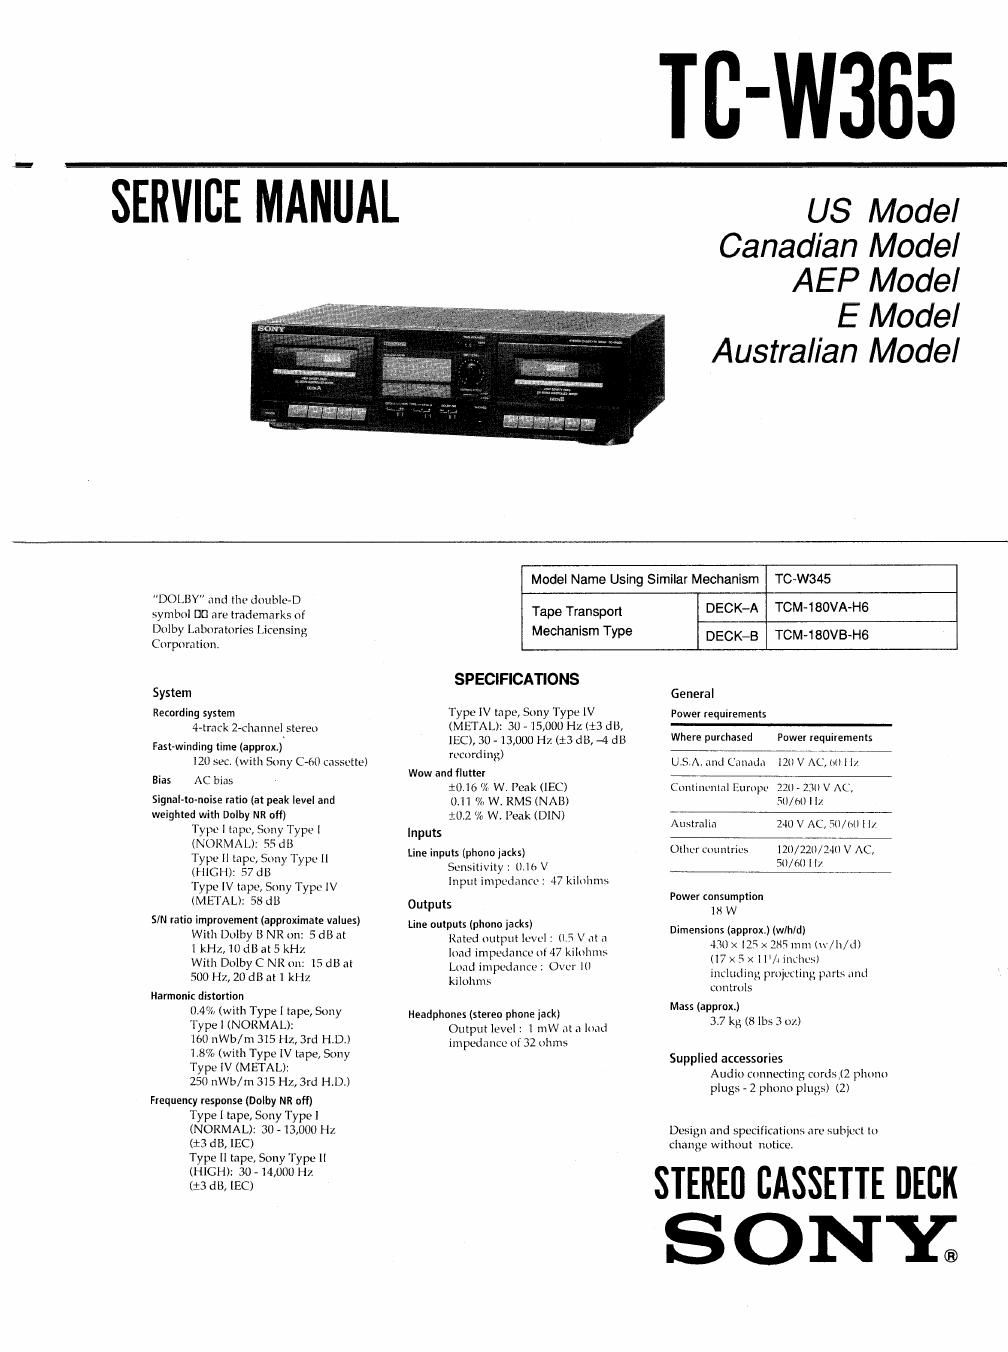 sony tc w 365 service manual